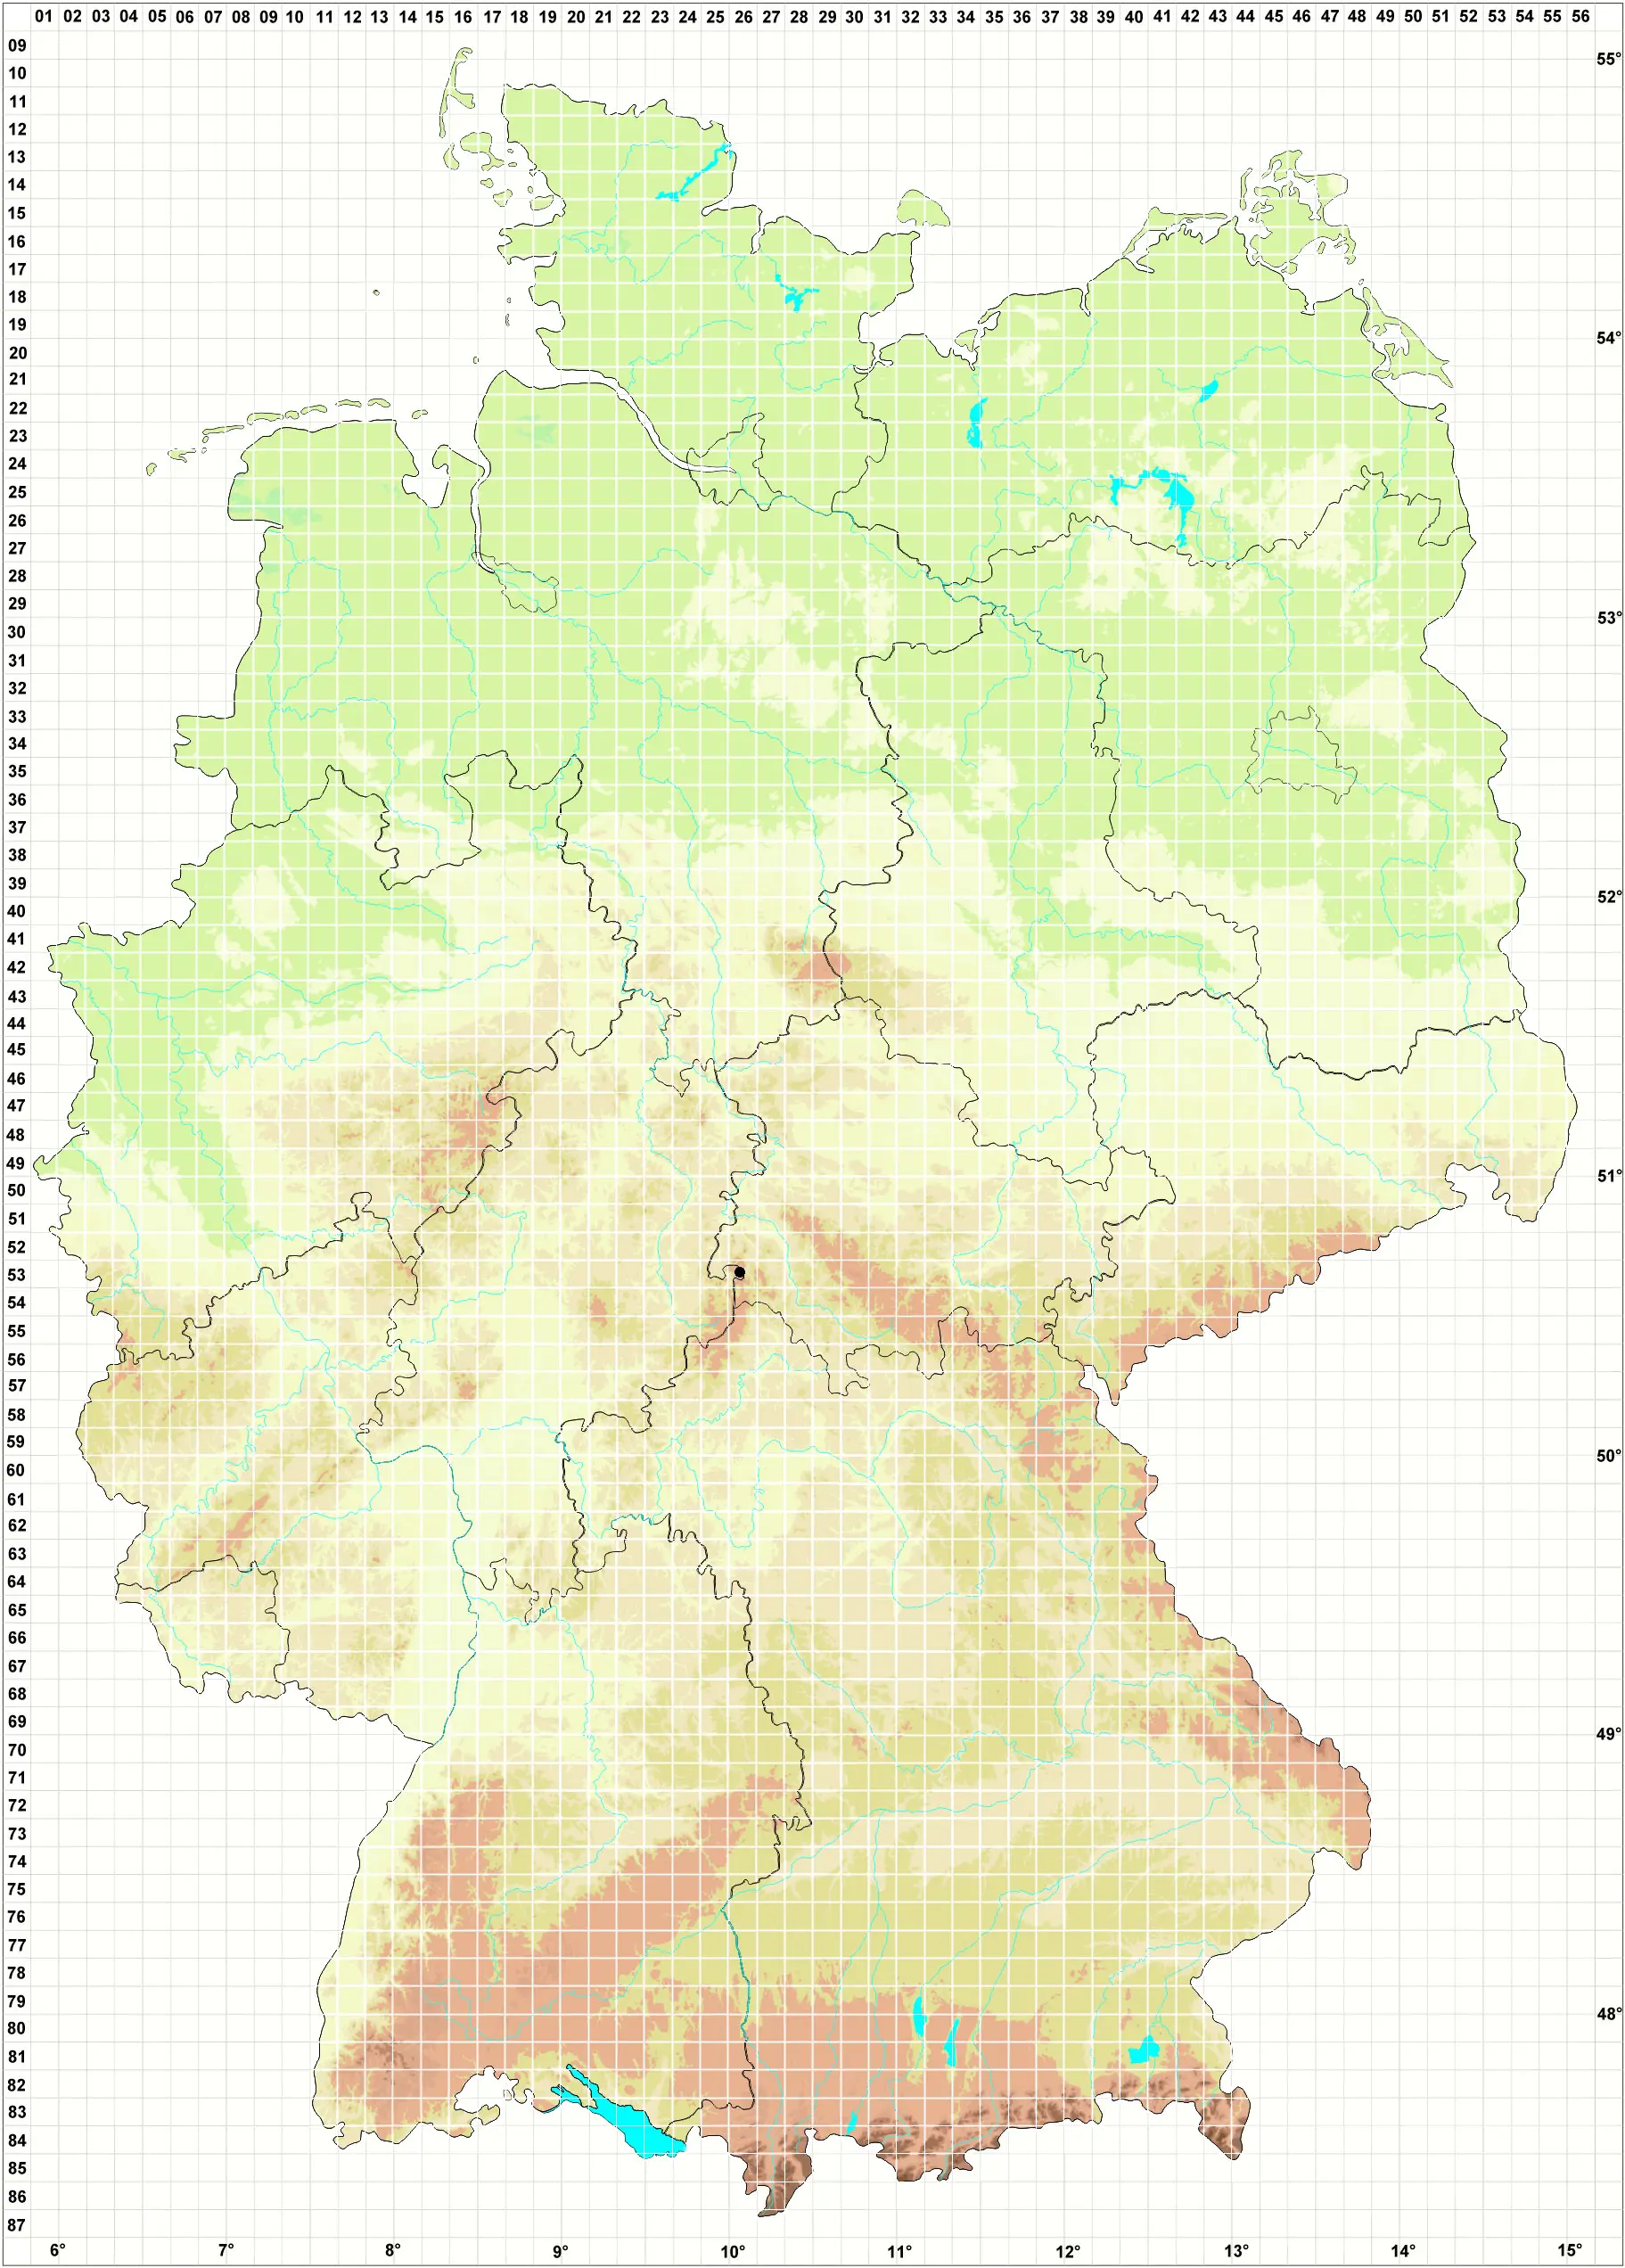 Karte H. Grünberg 01.11.2014